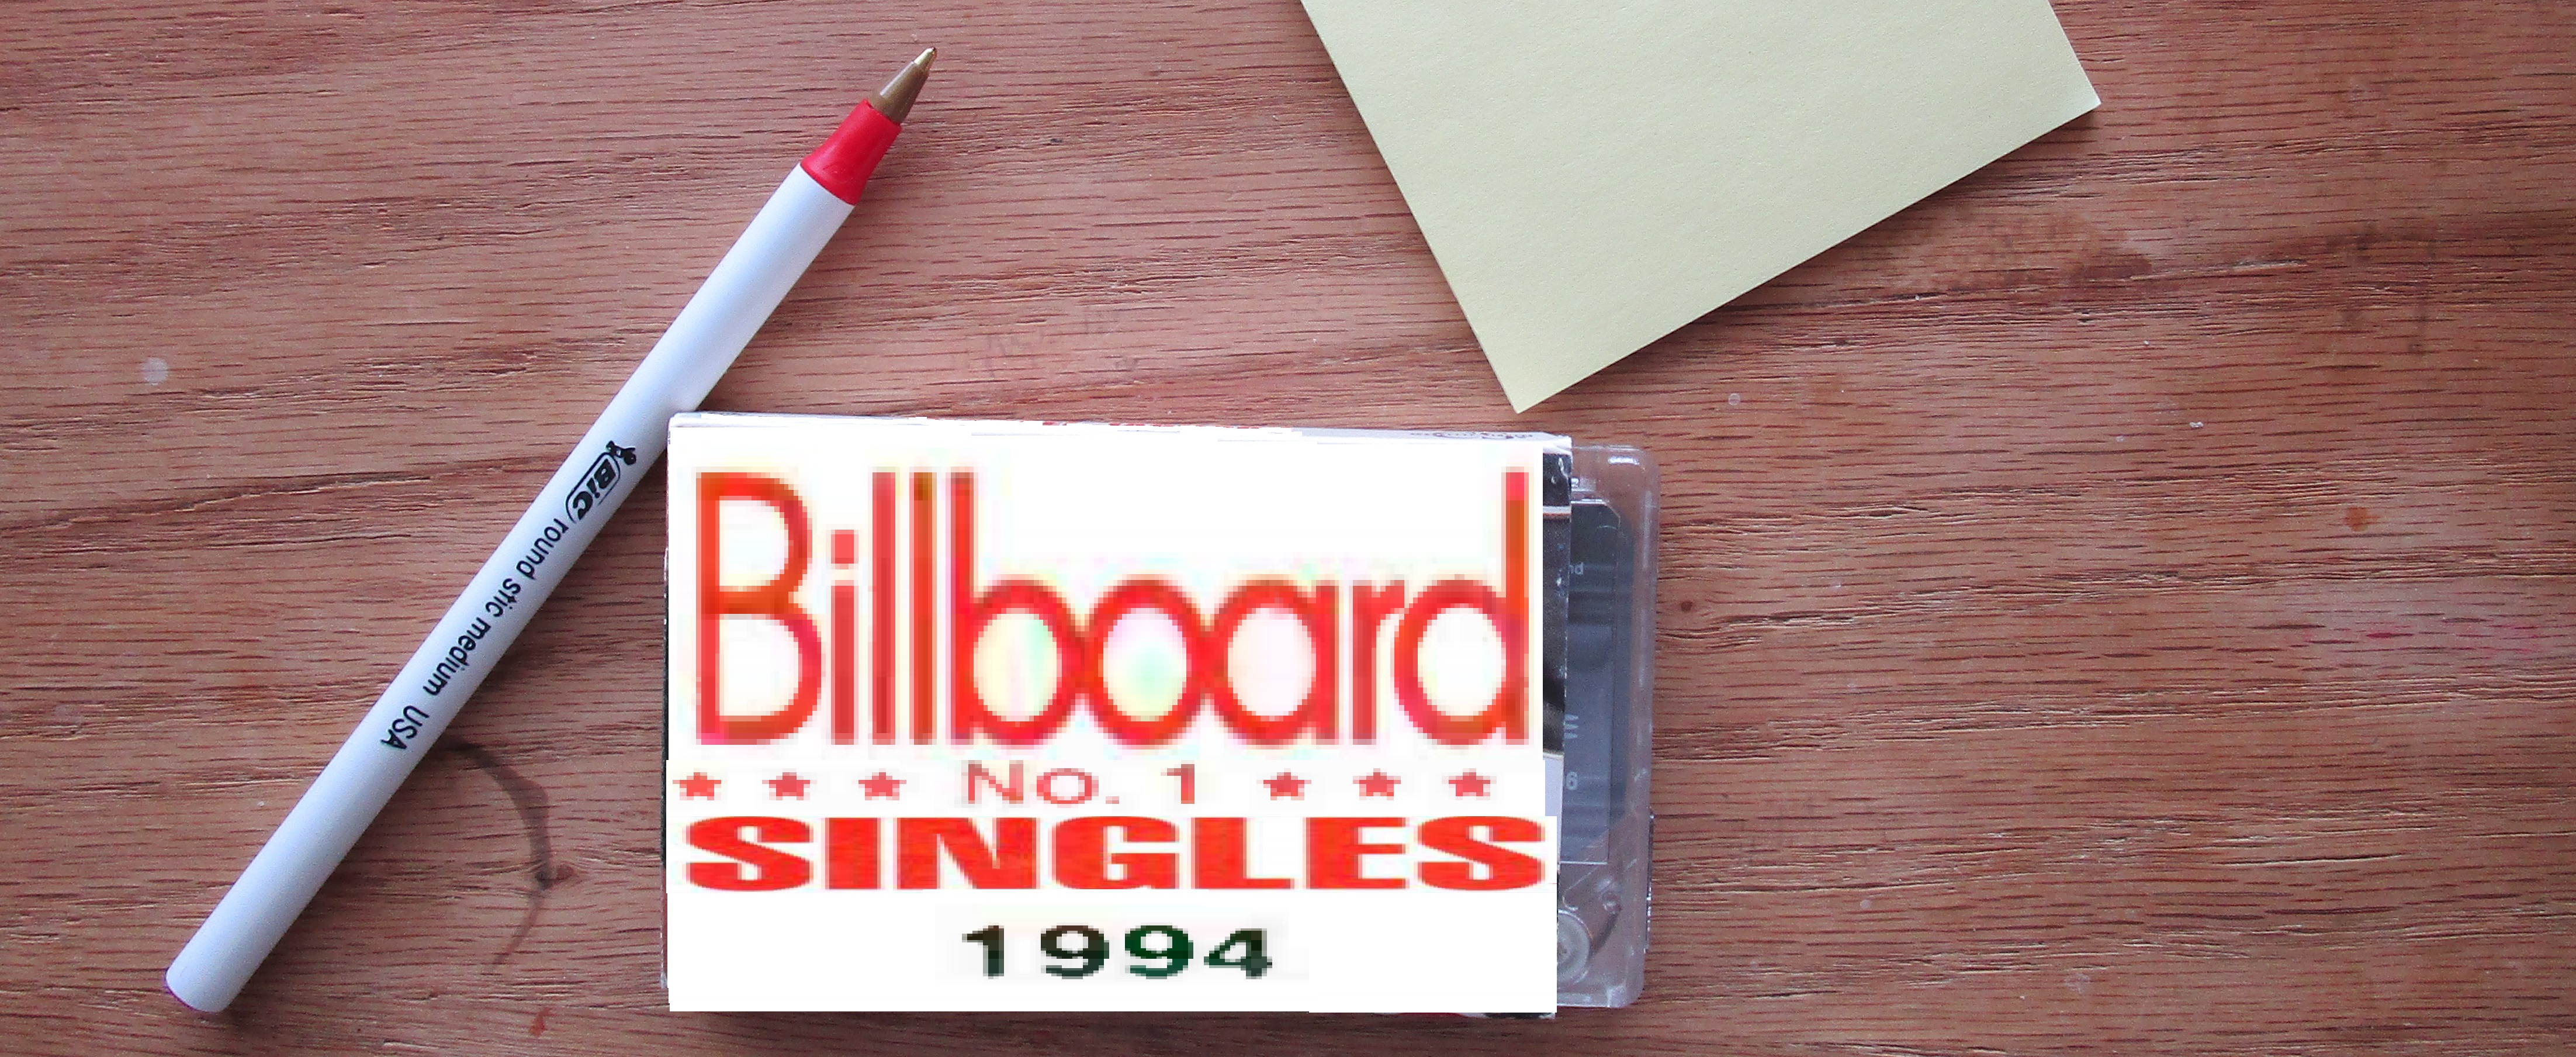 Billboard Charts 1994